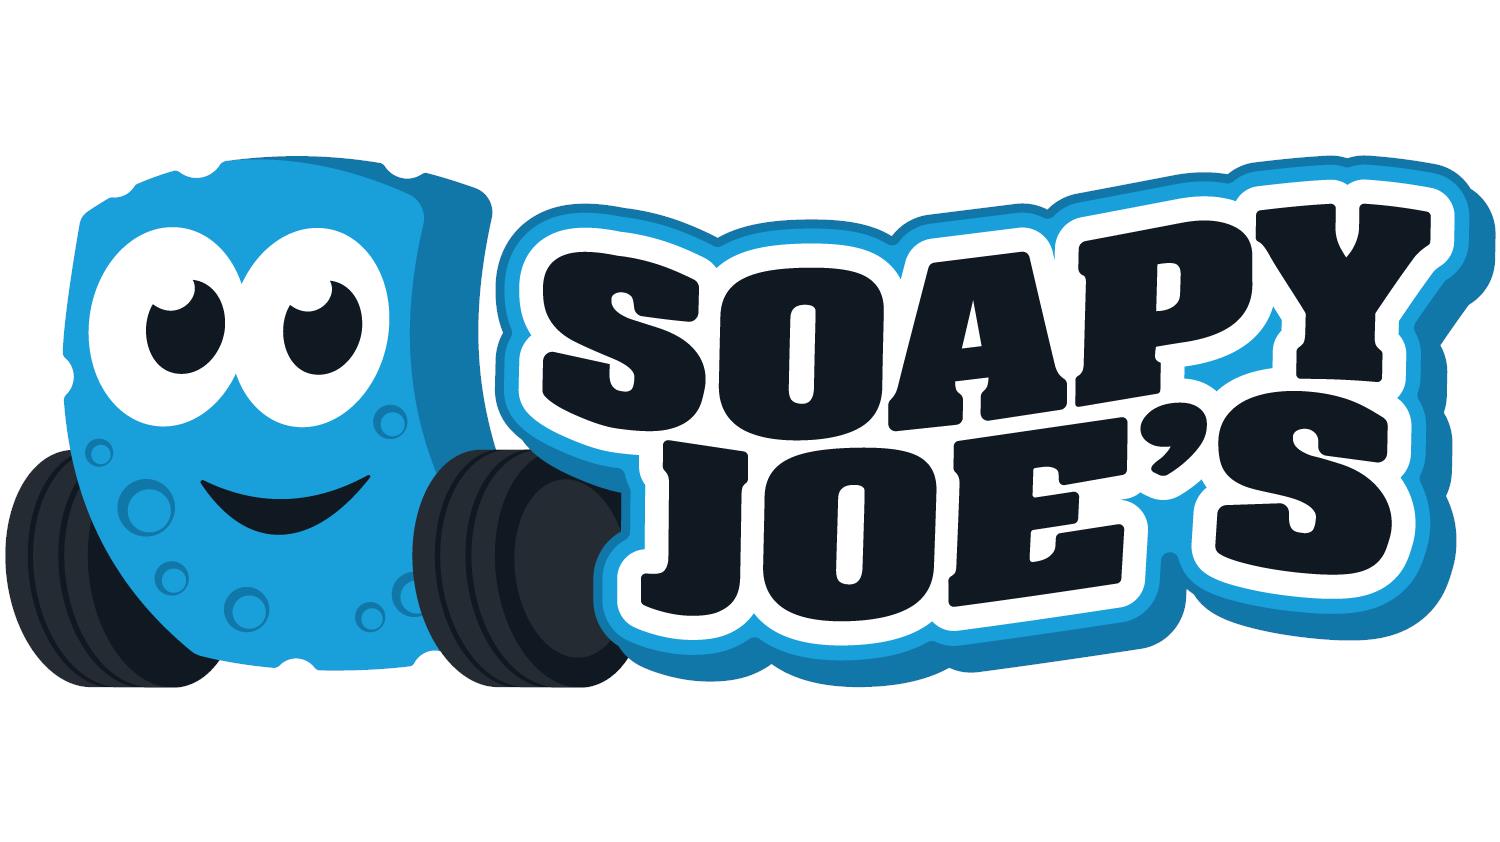 Soapy Joe's Car Wash Subscription